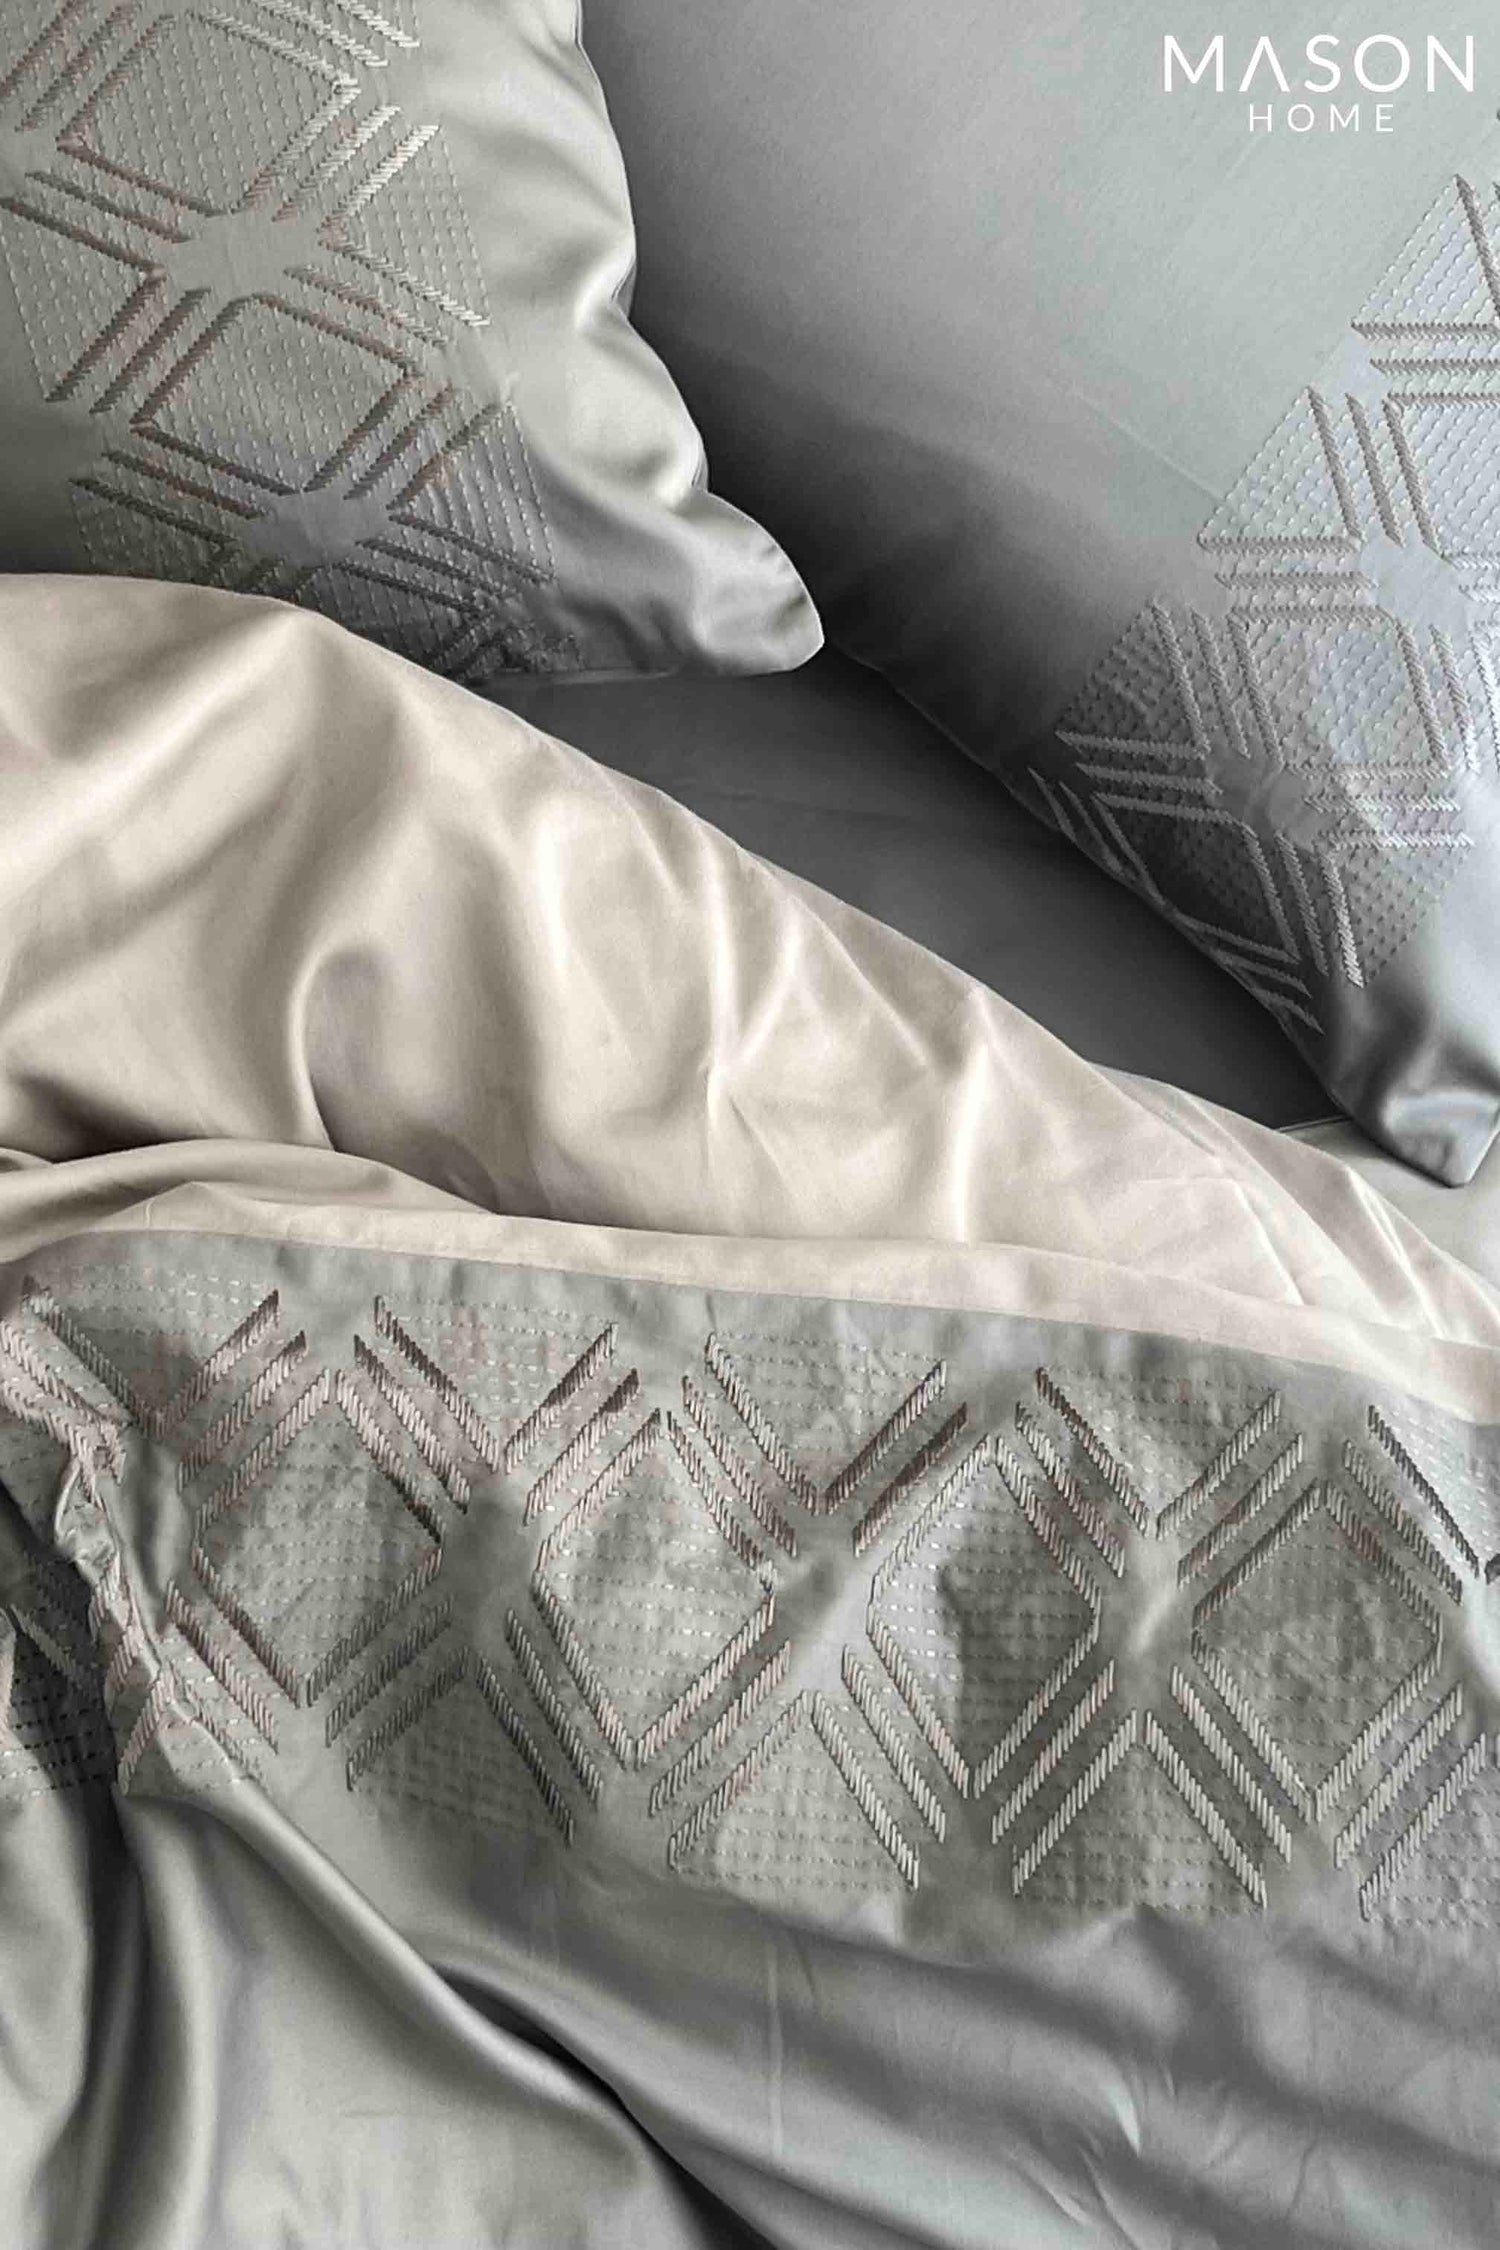 Vintage Slate Silver Dreams Duvet Cover Set With Bedsheet